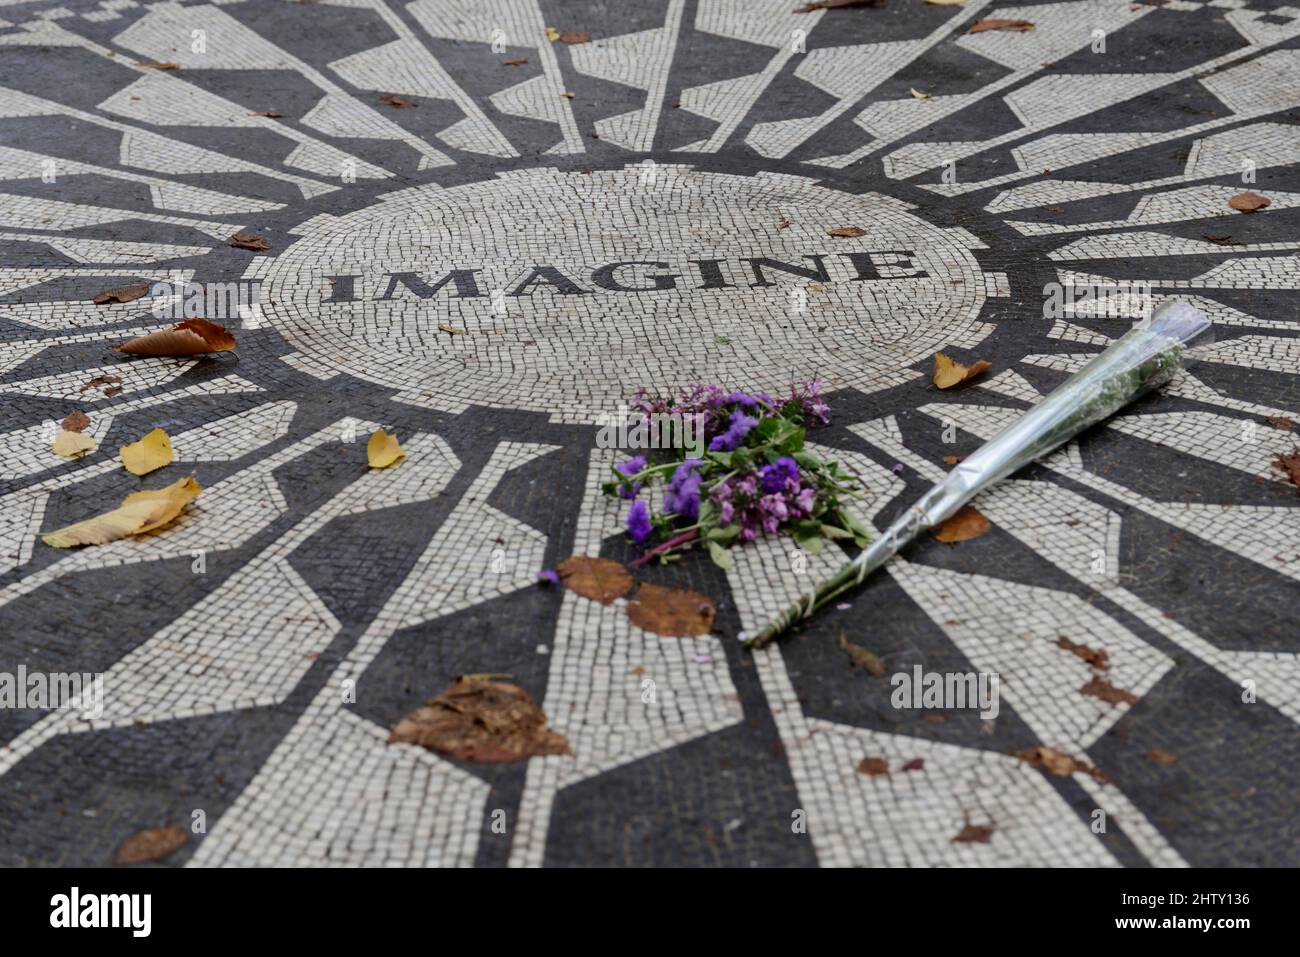 The John Lennon Memorial - JSTOR Daily